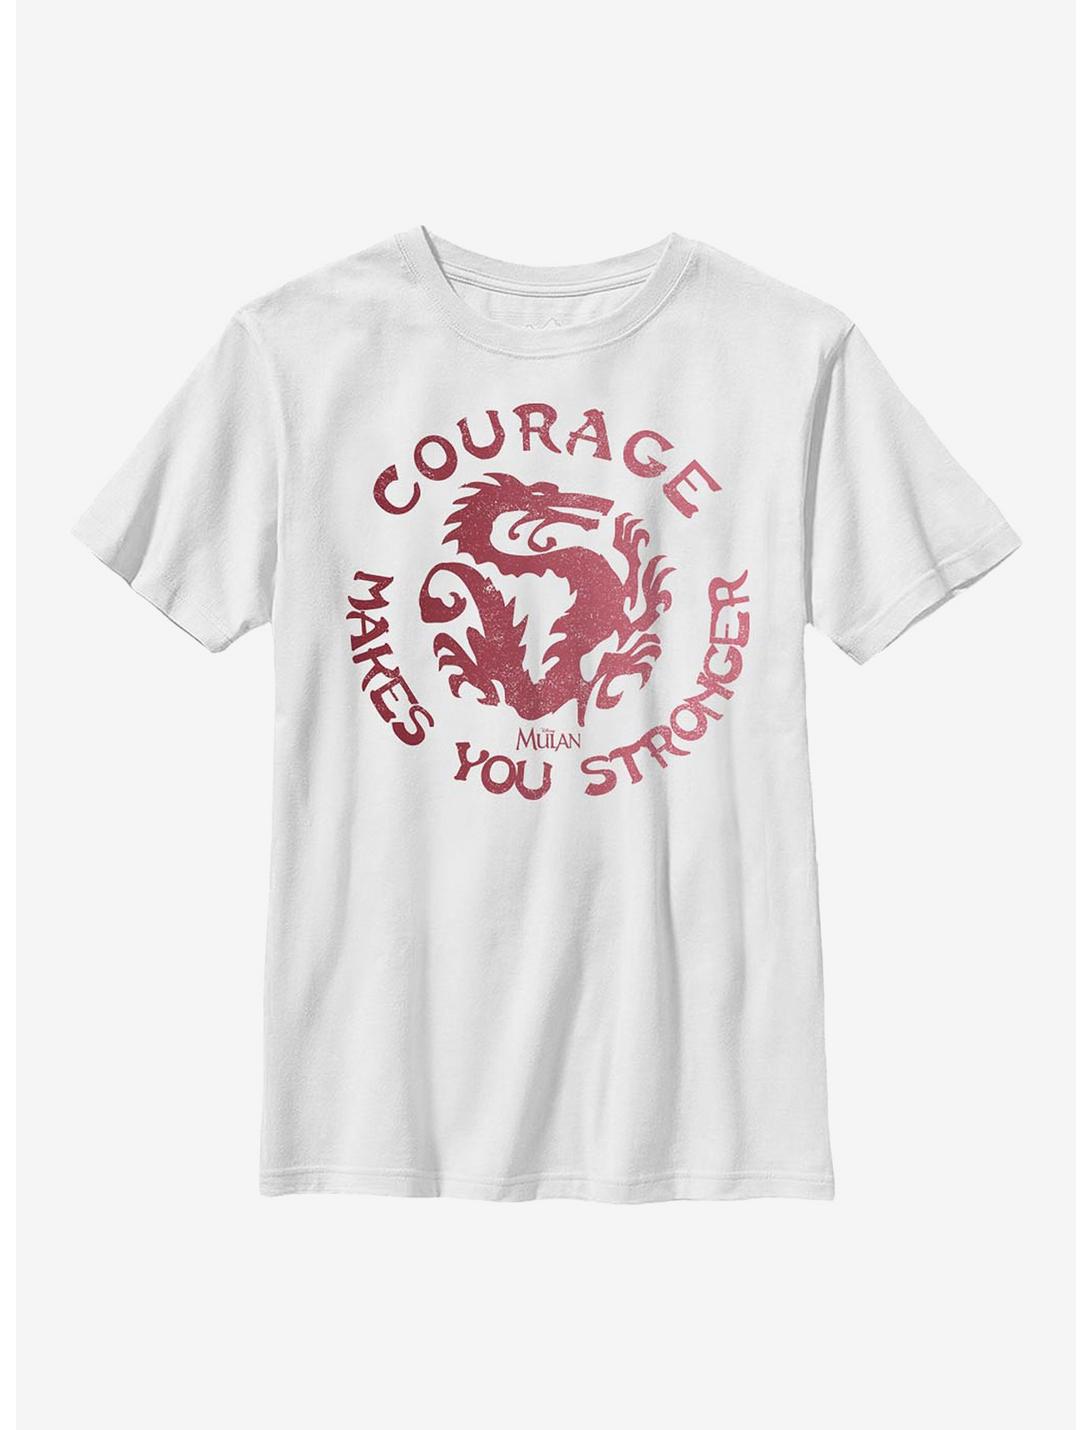 Plus Size Disney Mulan Courage Youth T-Shirt, WHITE, hi-res